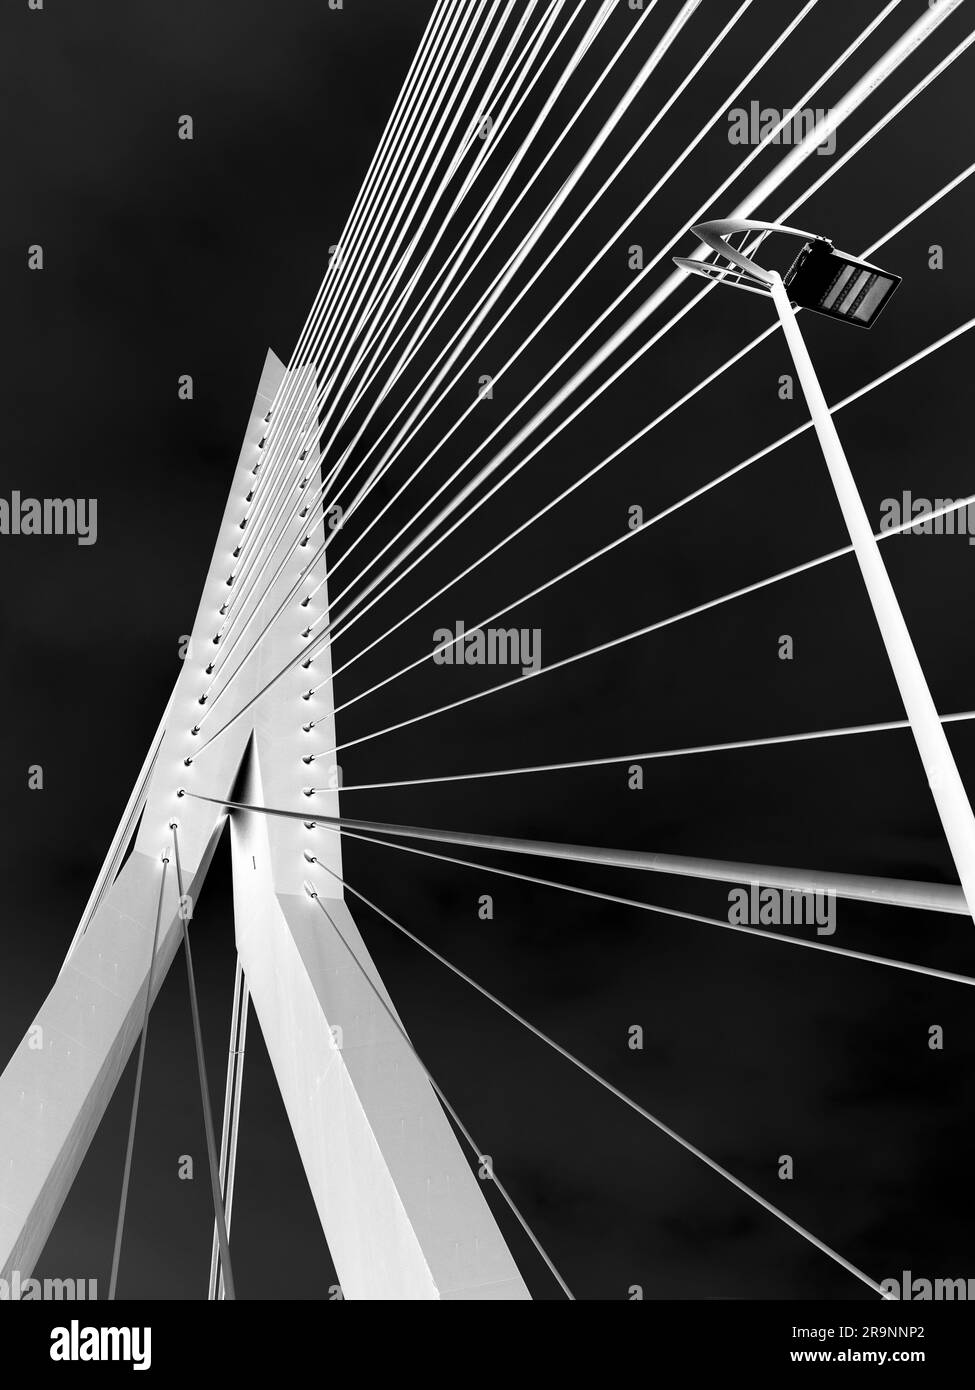 Nommé d'après le grand philosophe et humaniste hollandais de la renaissance, le magnifique nouveau pont suspendu de Rotterdam ajoute considérablement à la ville Banque D'Images